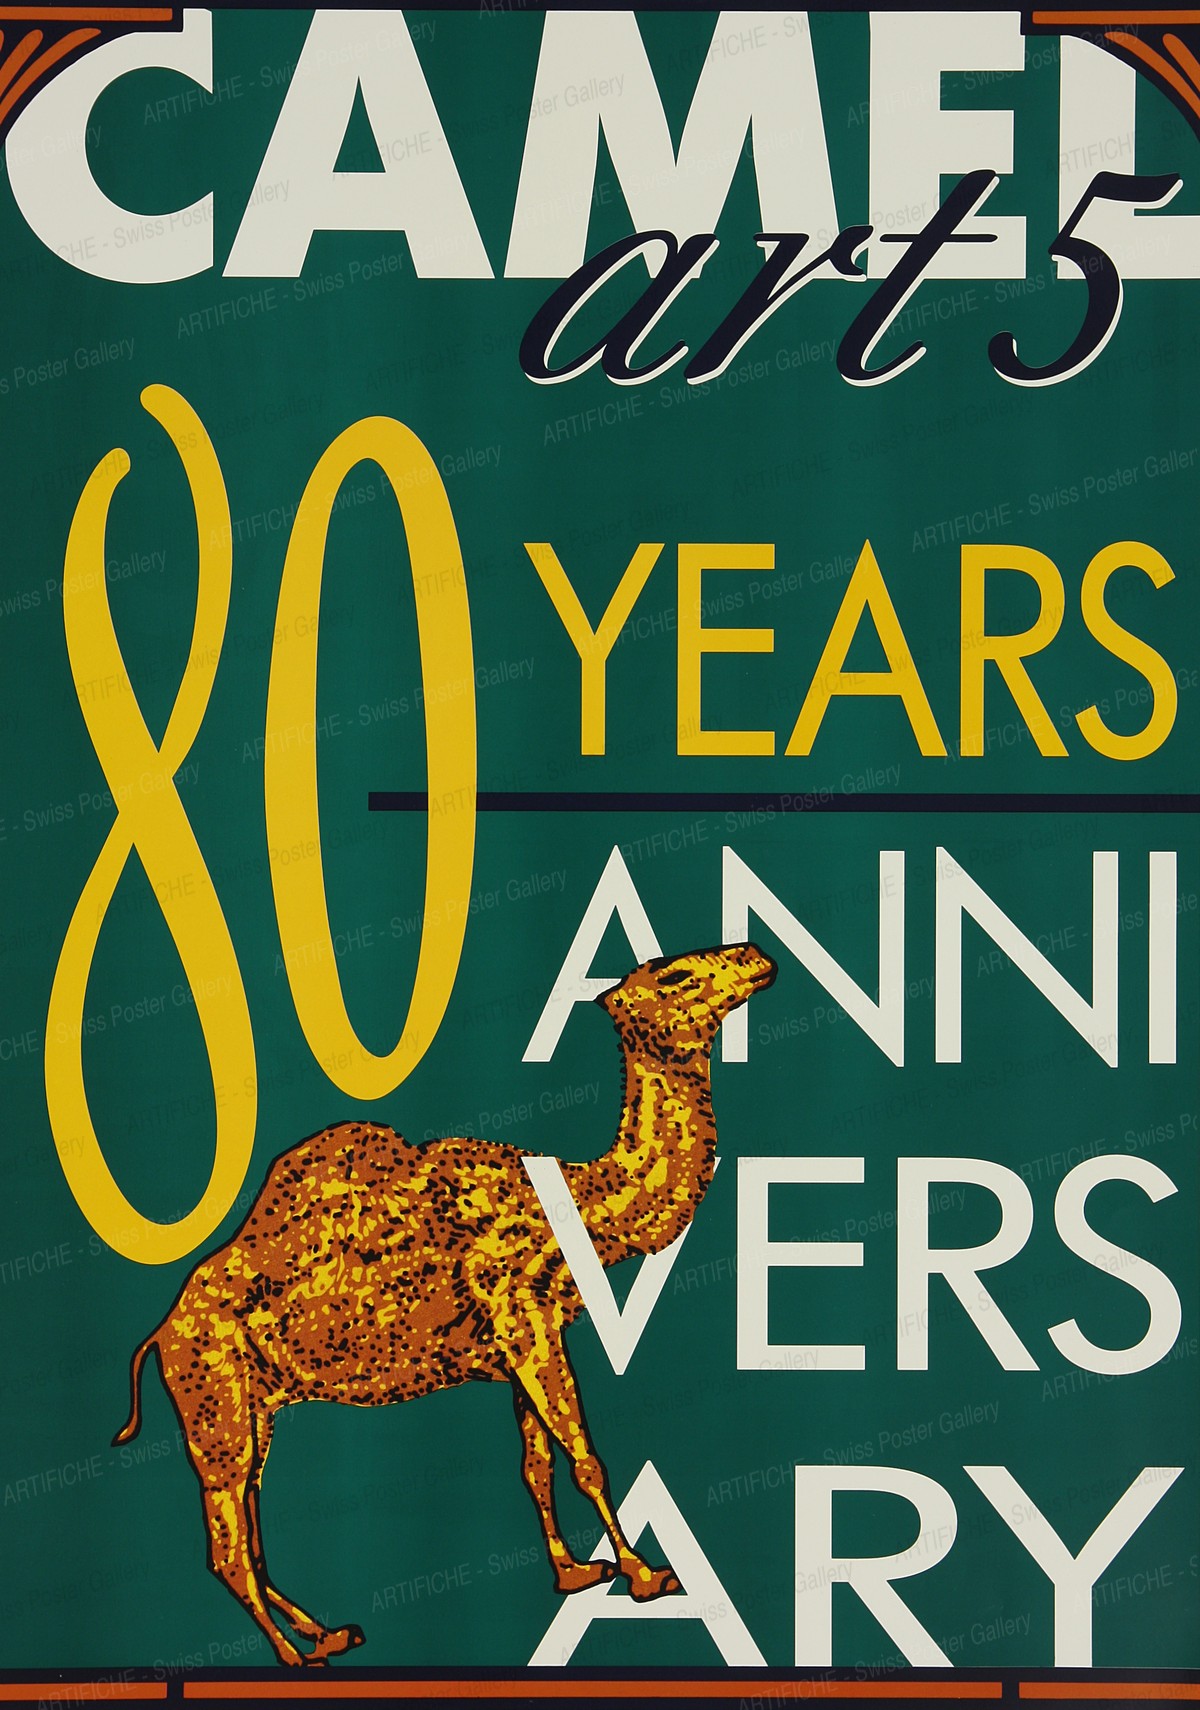 Camel art 5 – 80 years anniversary, Artist unknown